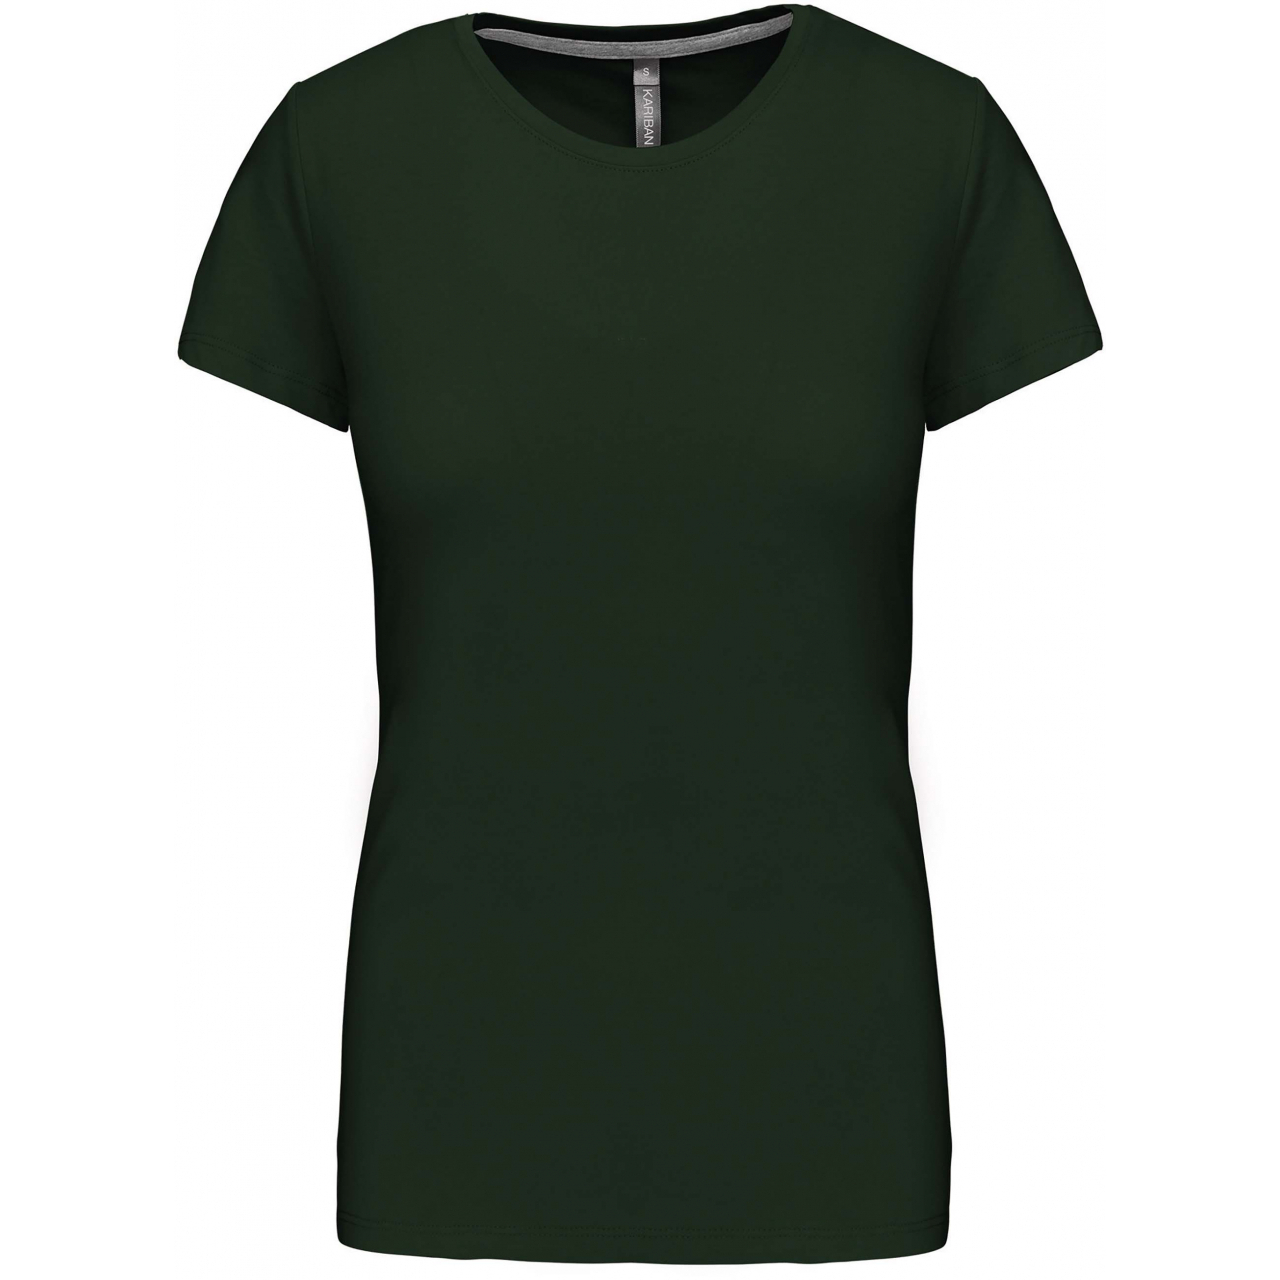 Dámské tričko Kariban s krátkým rukávem - tmavě zelené, M